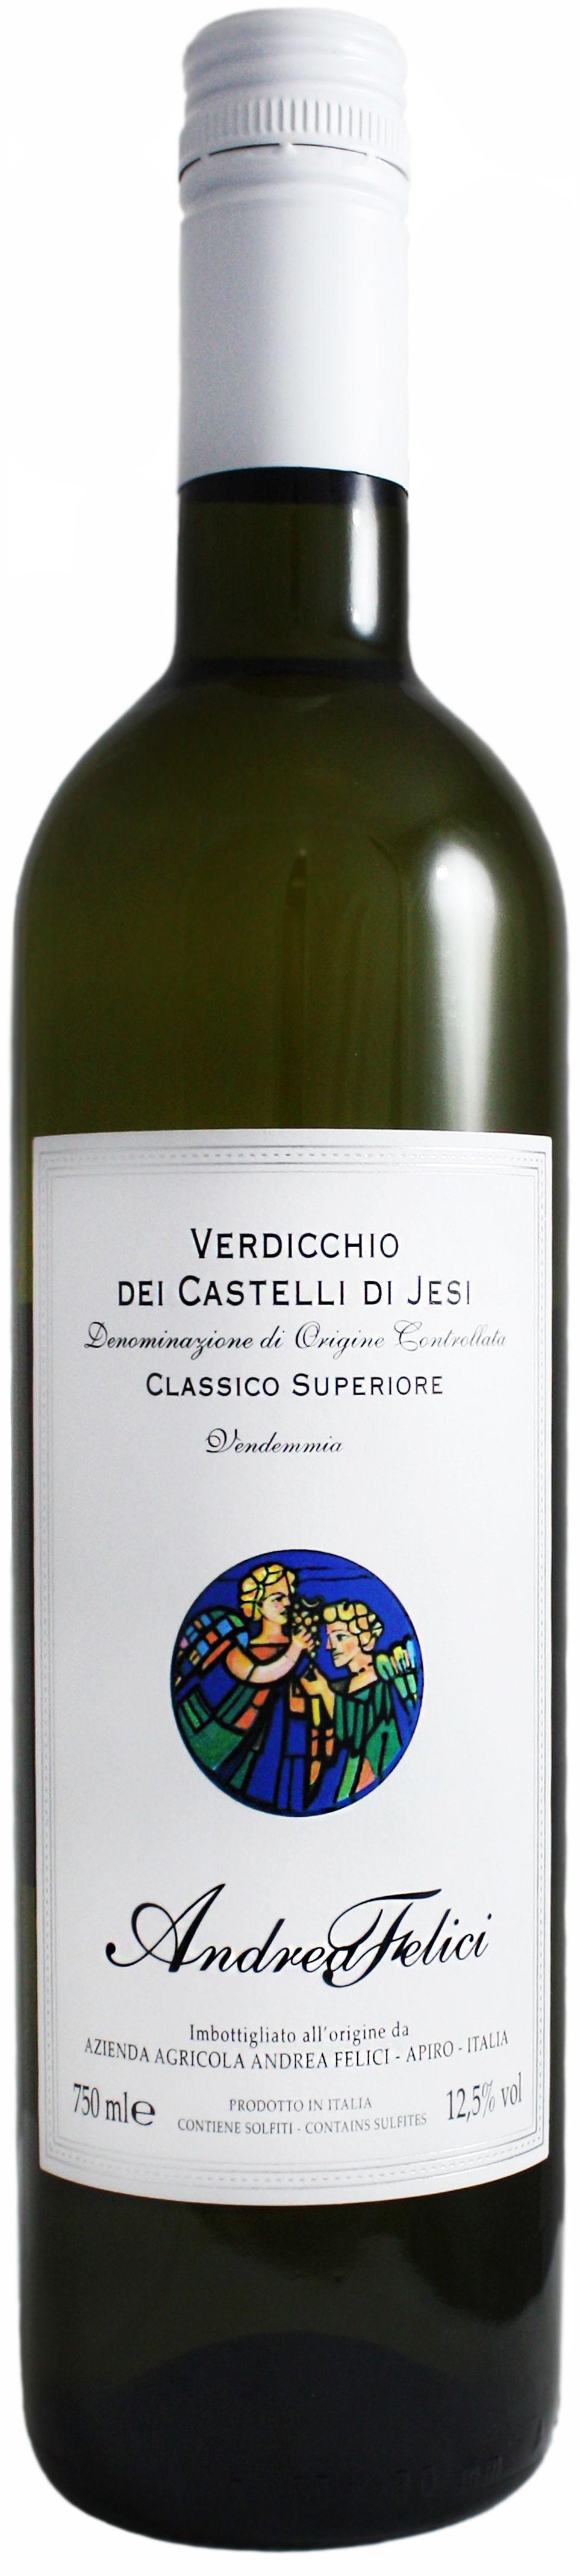 Andrea Felici, Verdicchio Dei Castelli Di Jesi Classico Superiore, 2020